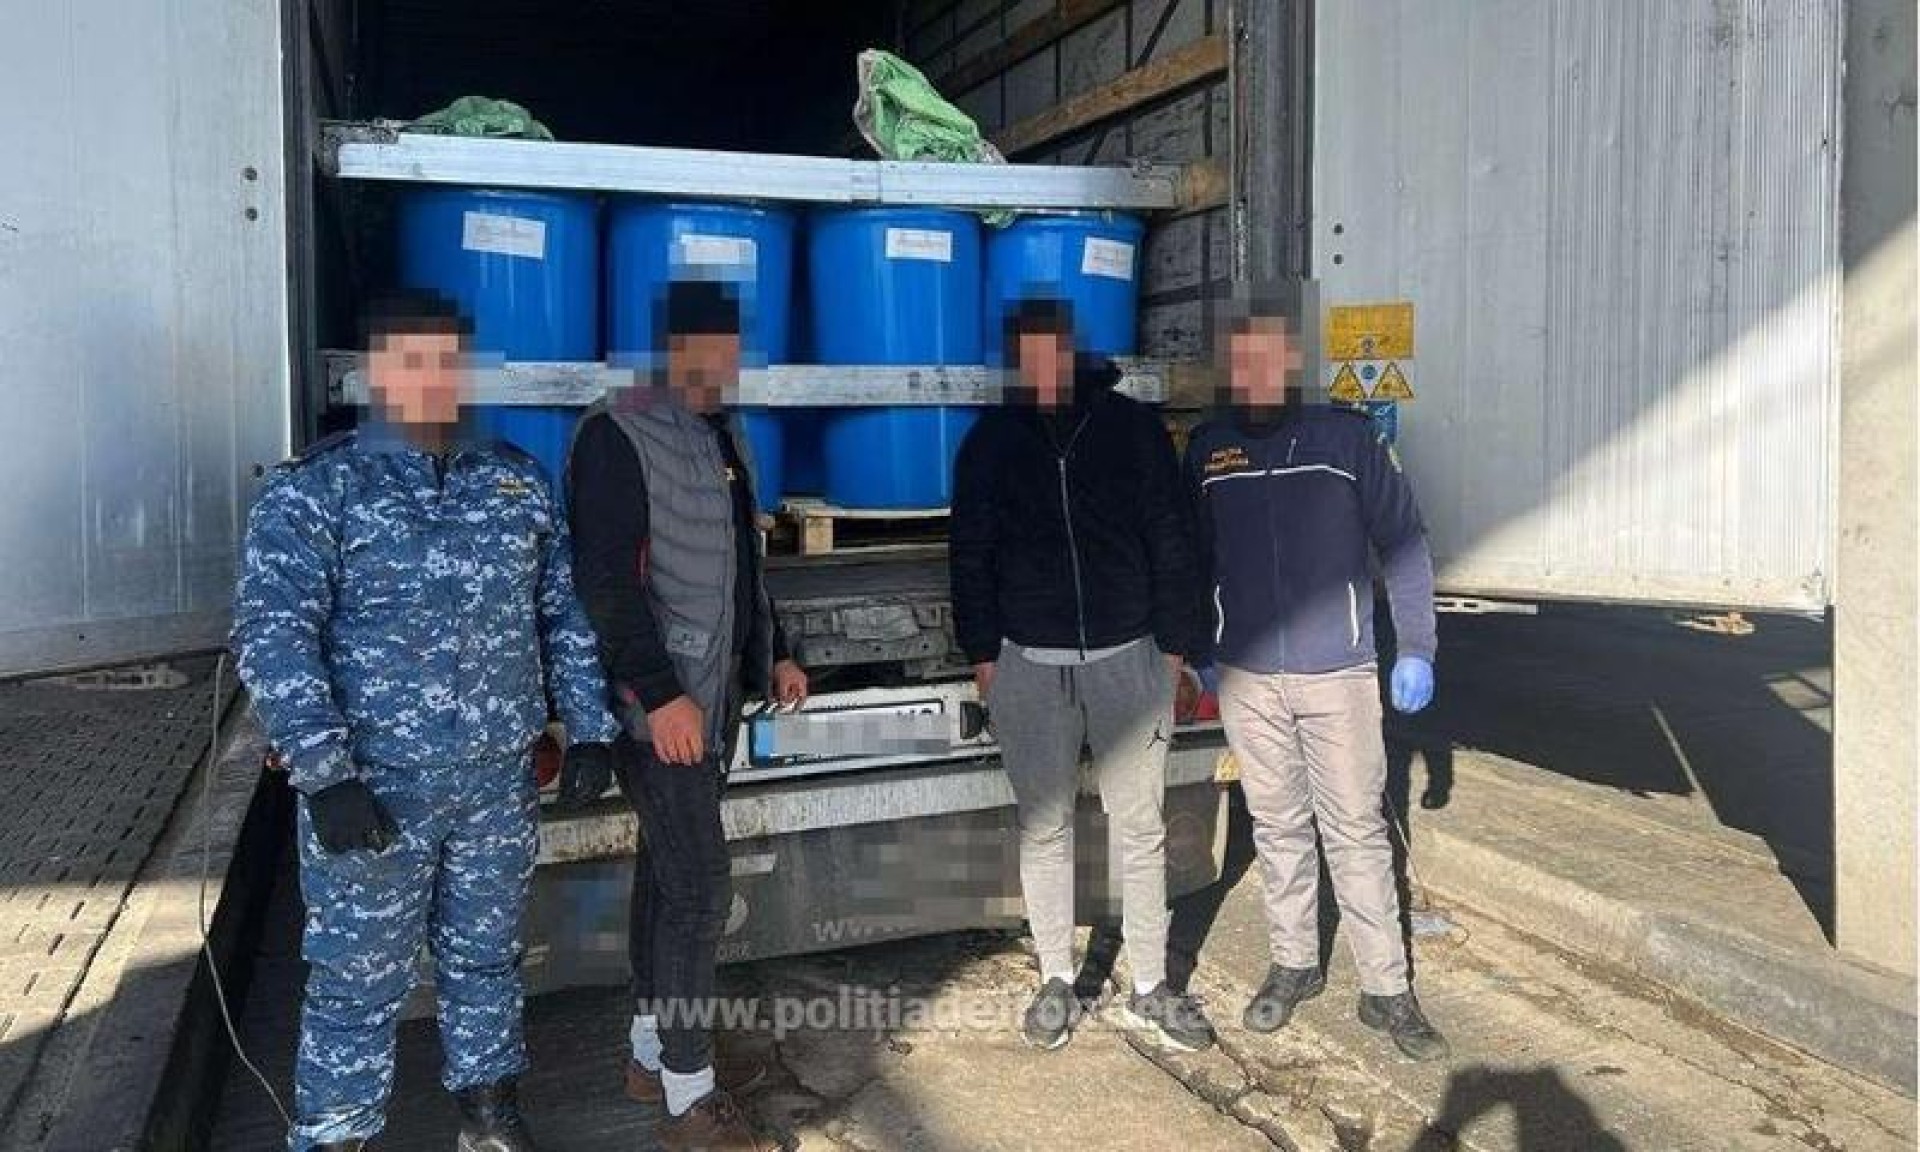 Doi palestinieni au încercat să intre în România ascunşi într-un camion